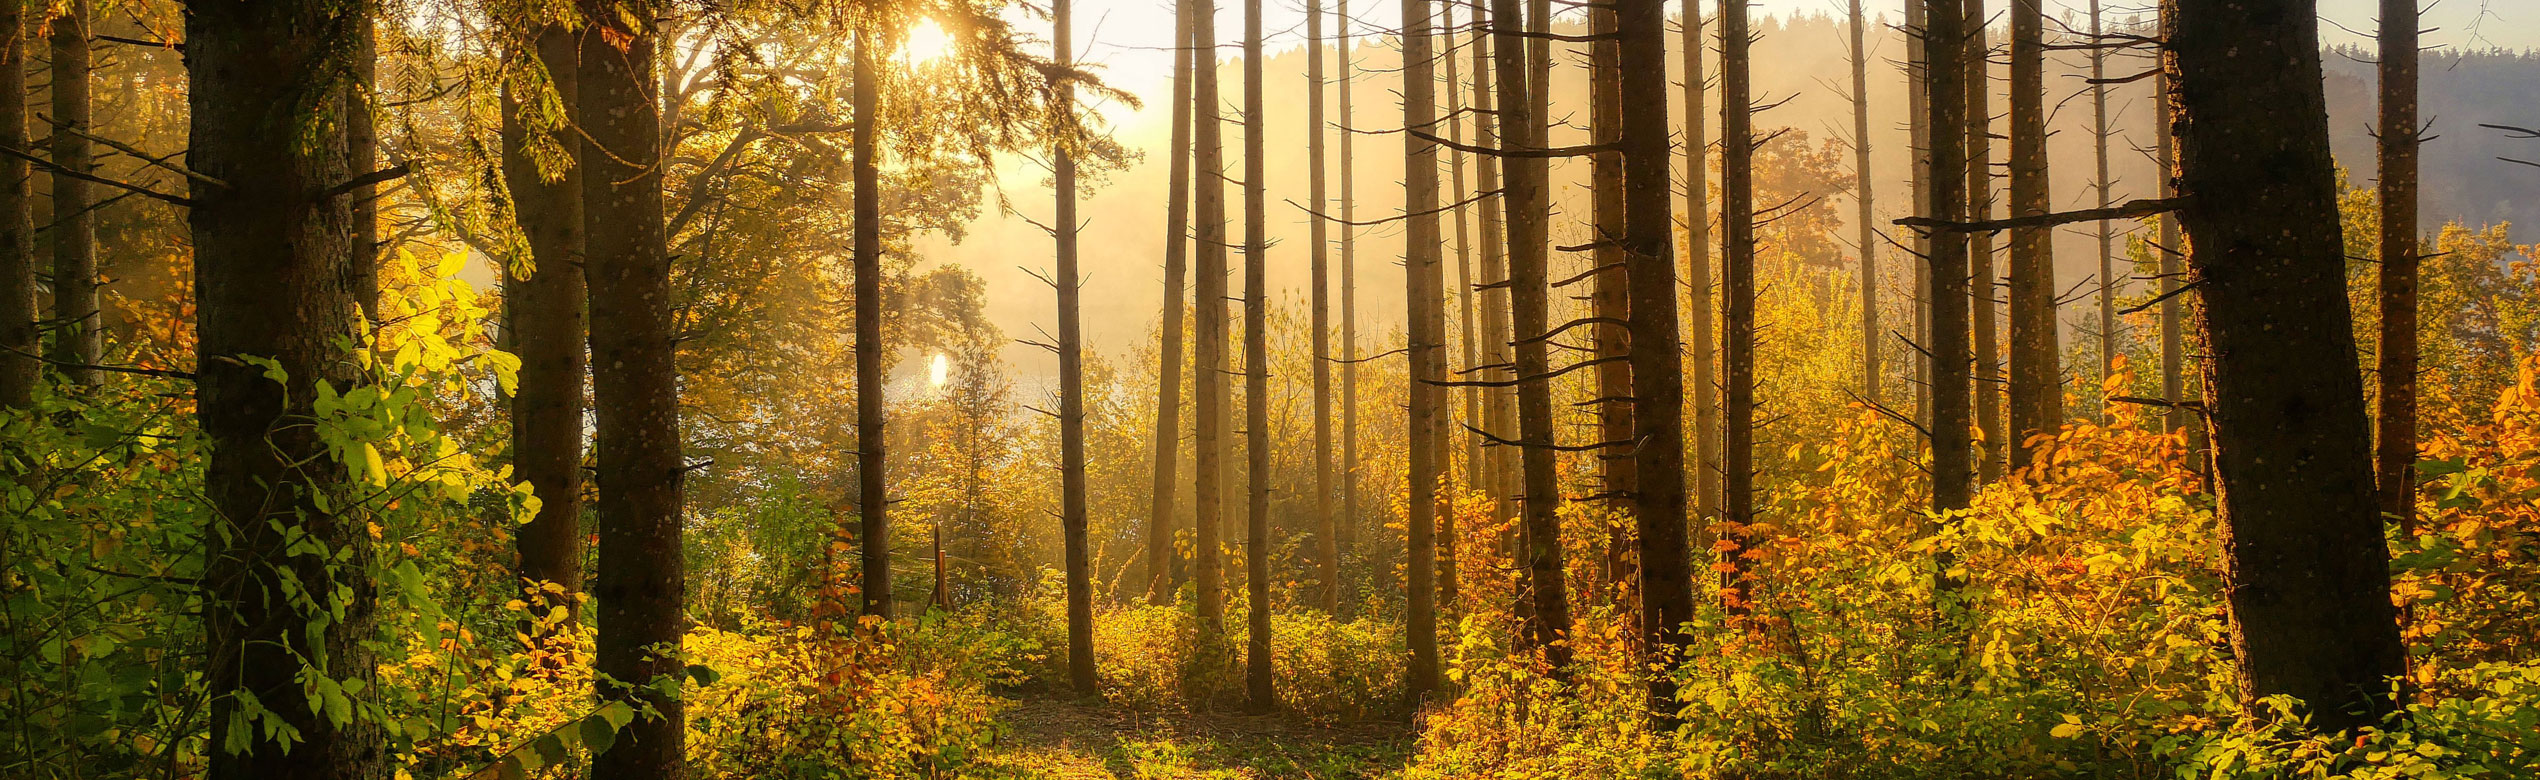 Raiffeisen Forst Waldbetreuung, Baum- und Grünflächenpflege